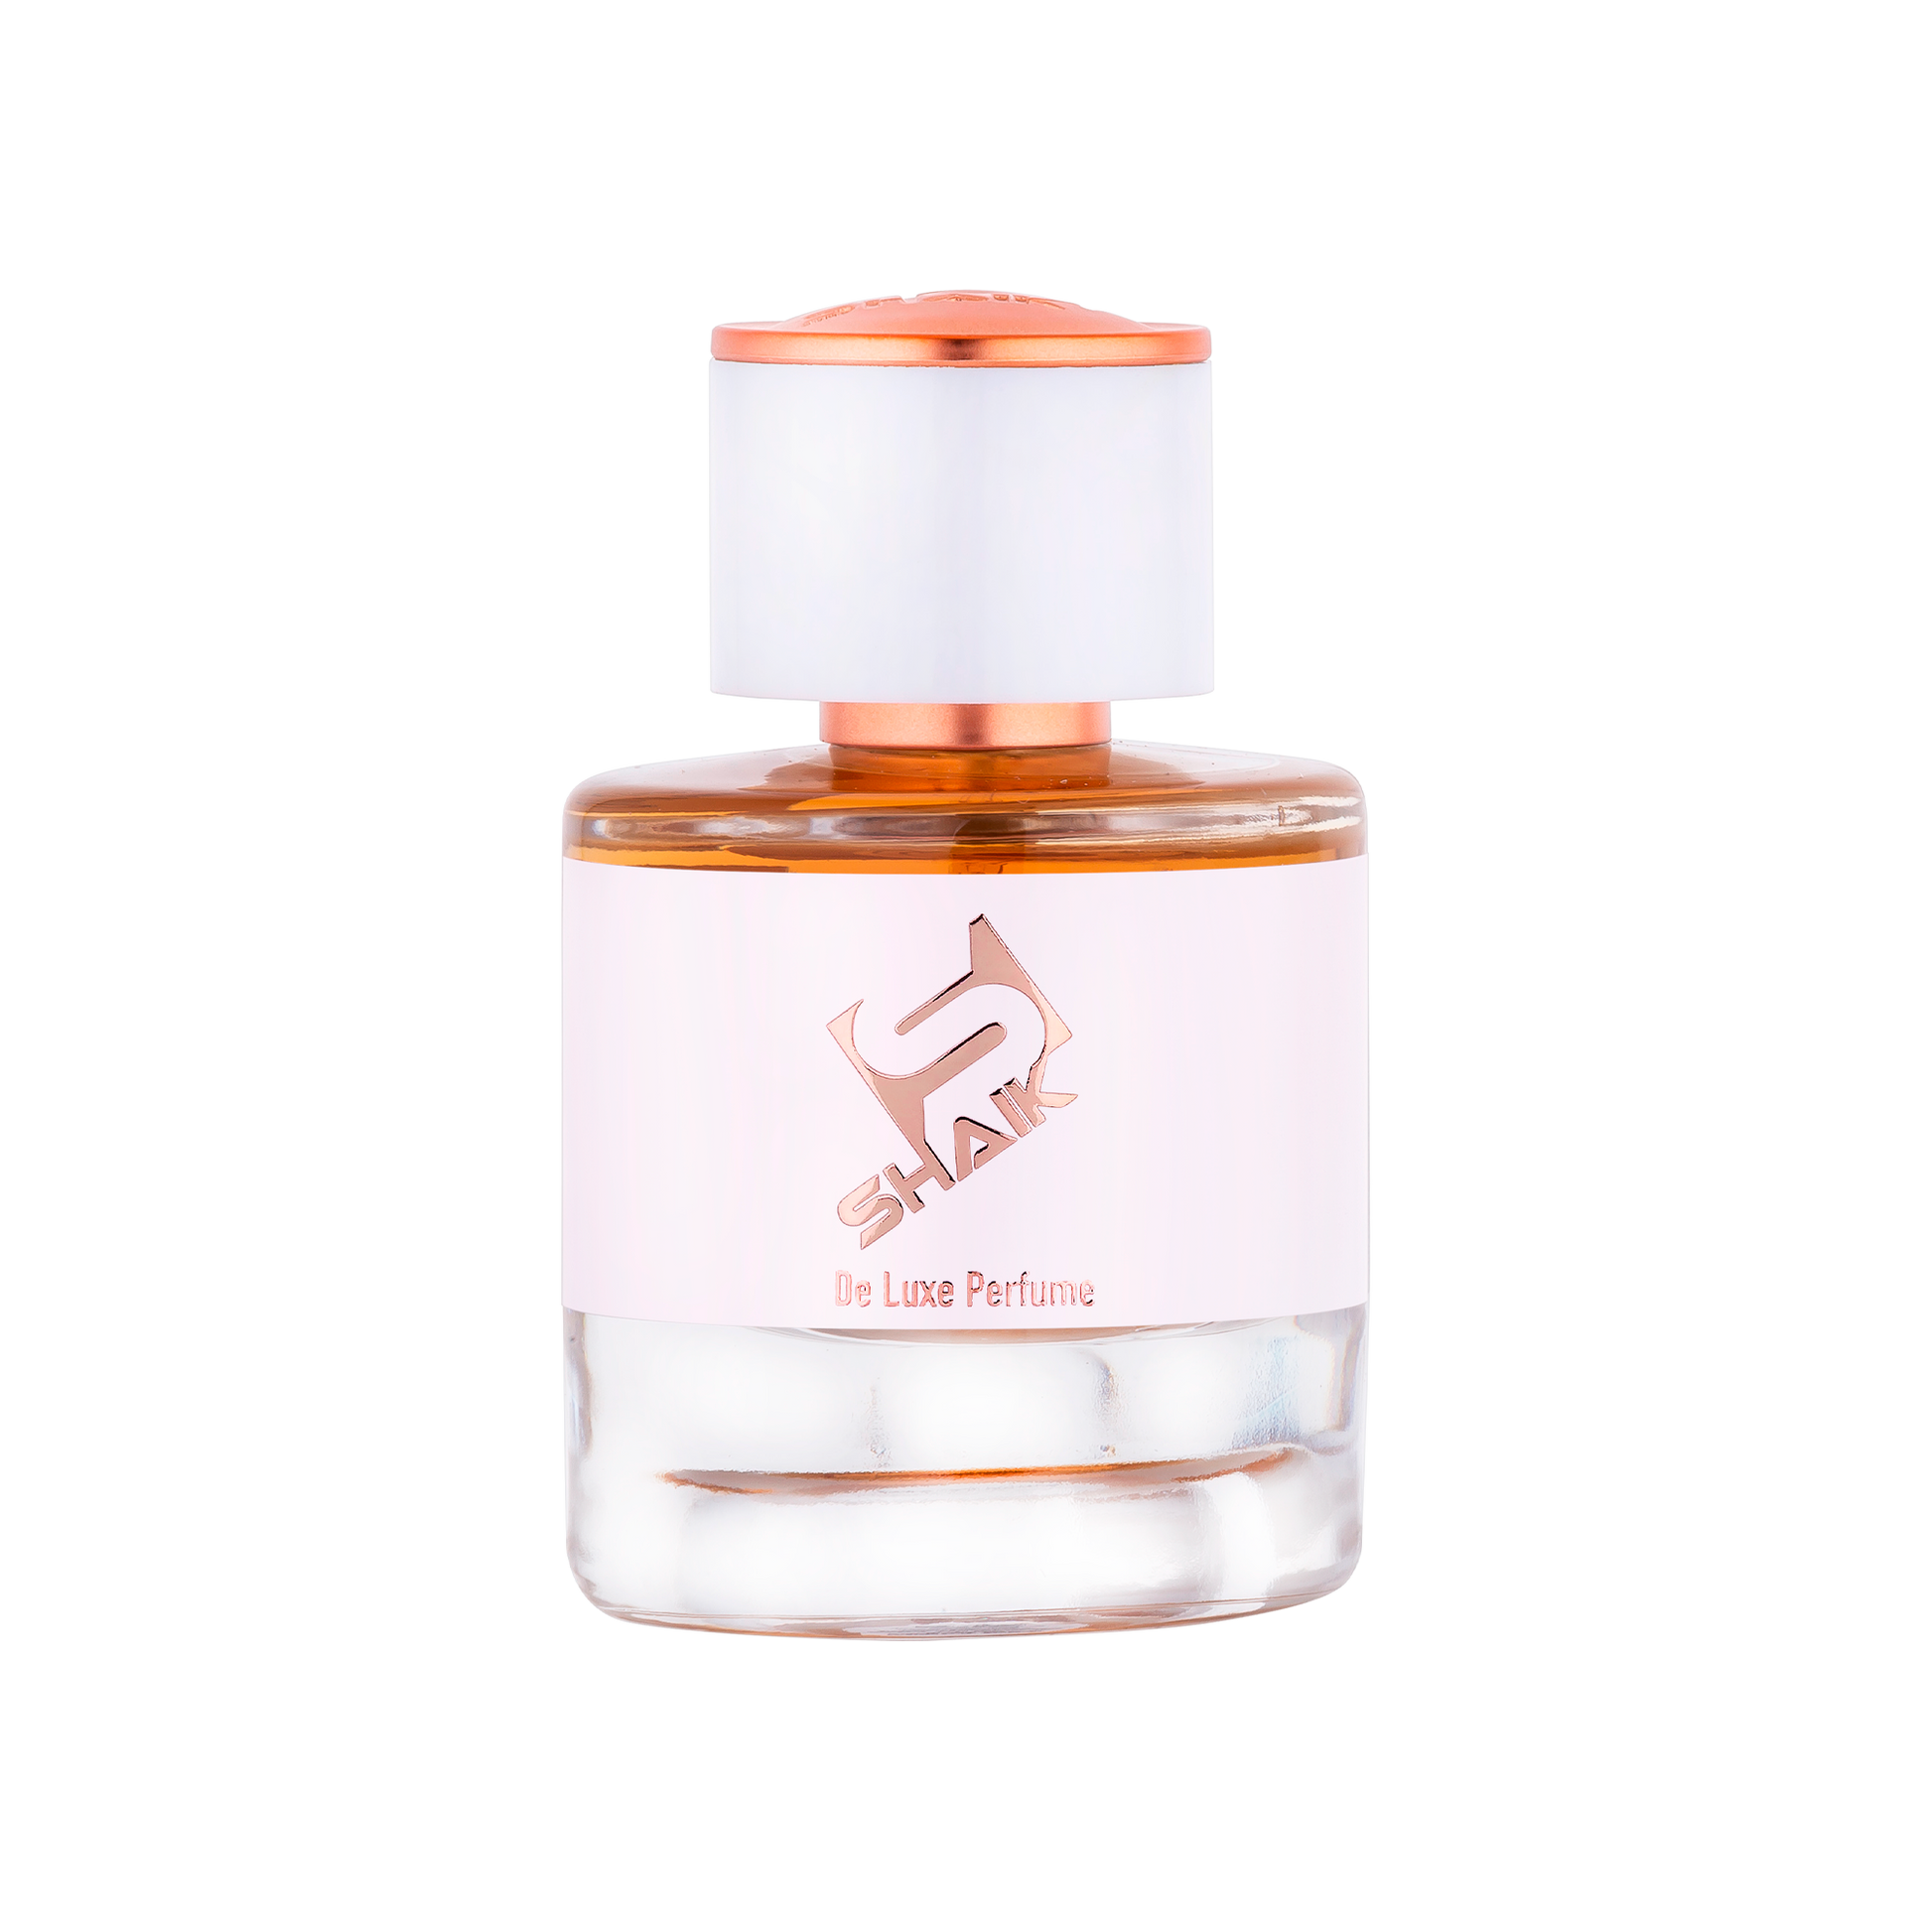 Shaik - 10.008 - Vanilla, White Floral, Powdery - Shaik Perfume